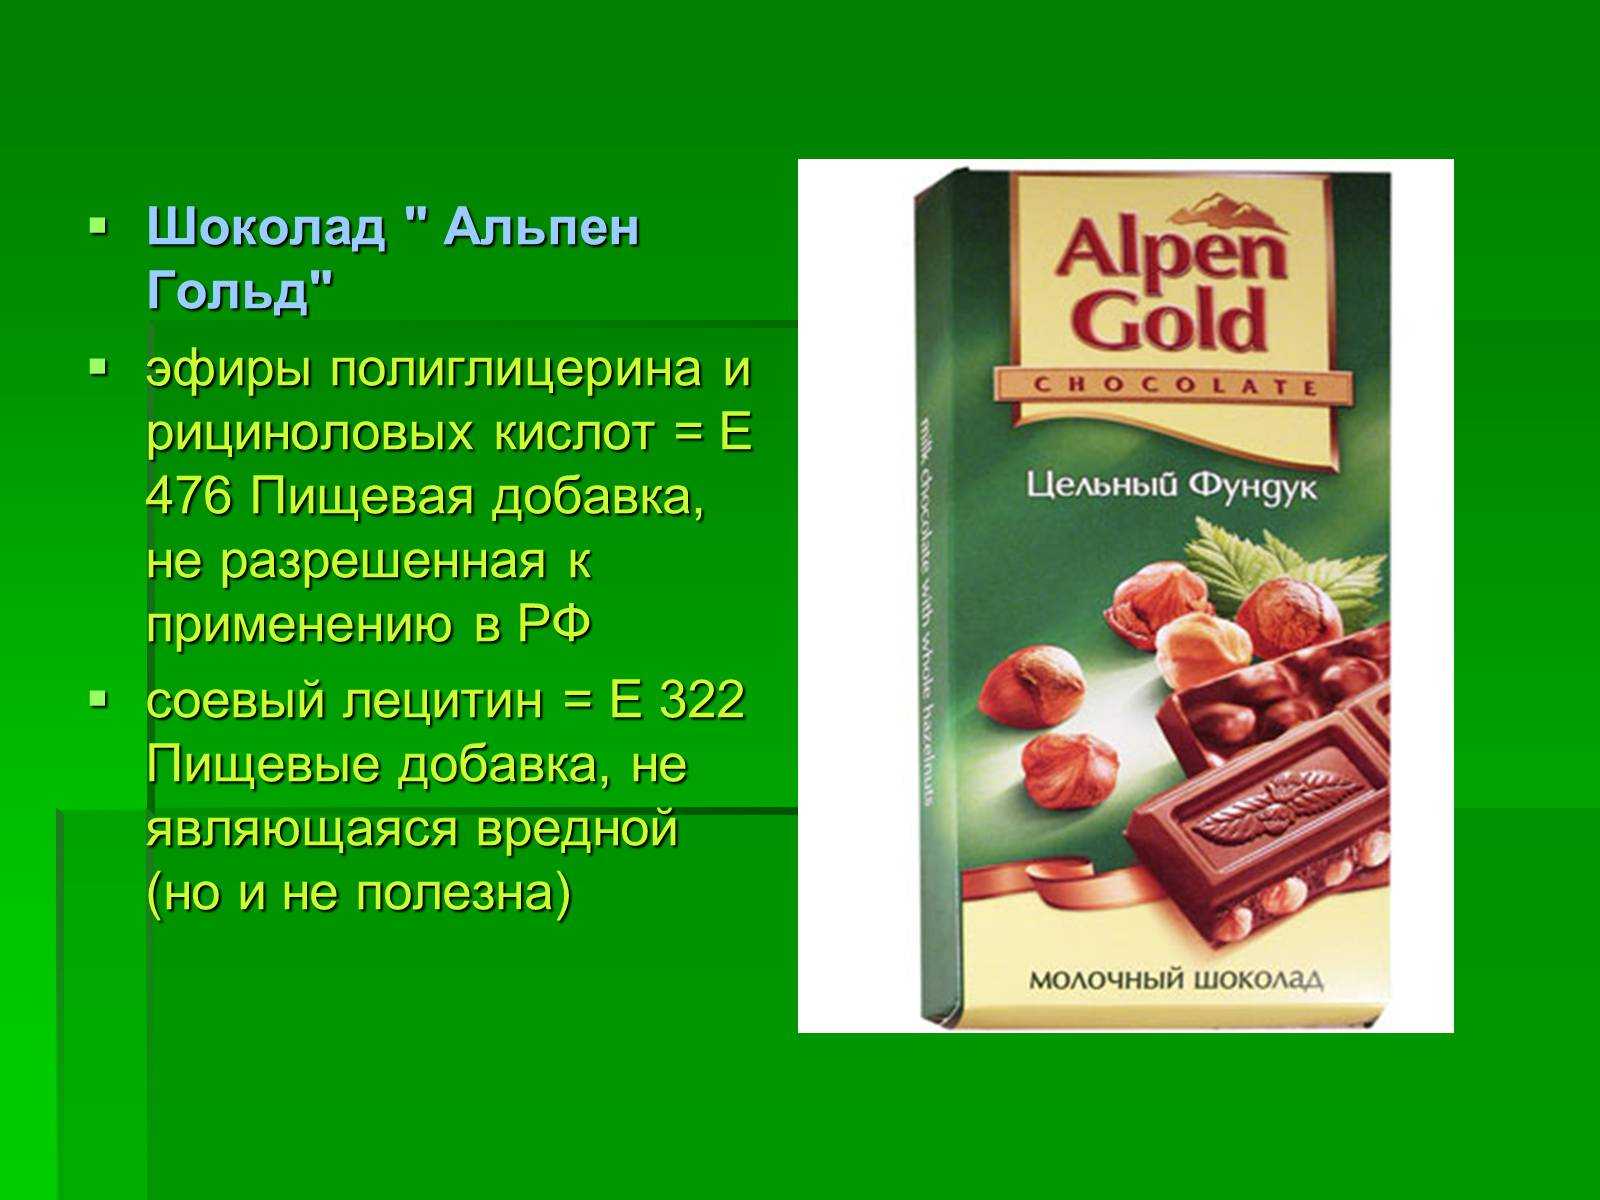 Е 476 пищевая добавка. Альпен Гольд пищевые добавки. Лецитин соевый e476. Шоколад Альпен Гольде добавки. Е476 пищевая добавка в шоколаде.